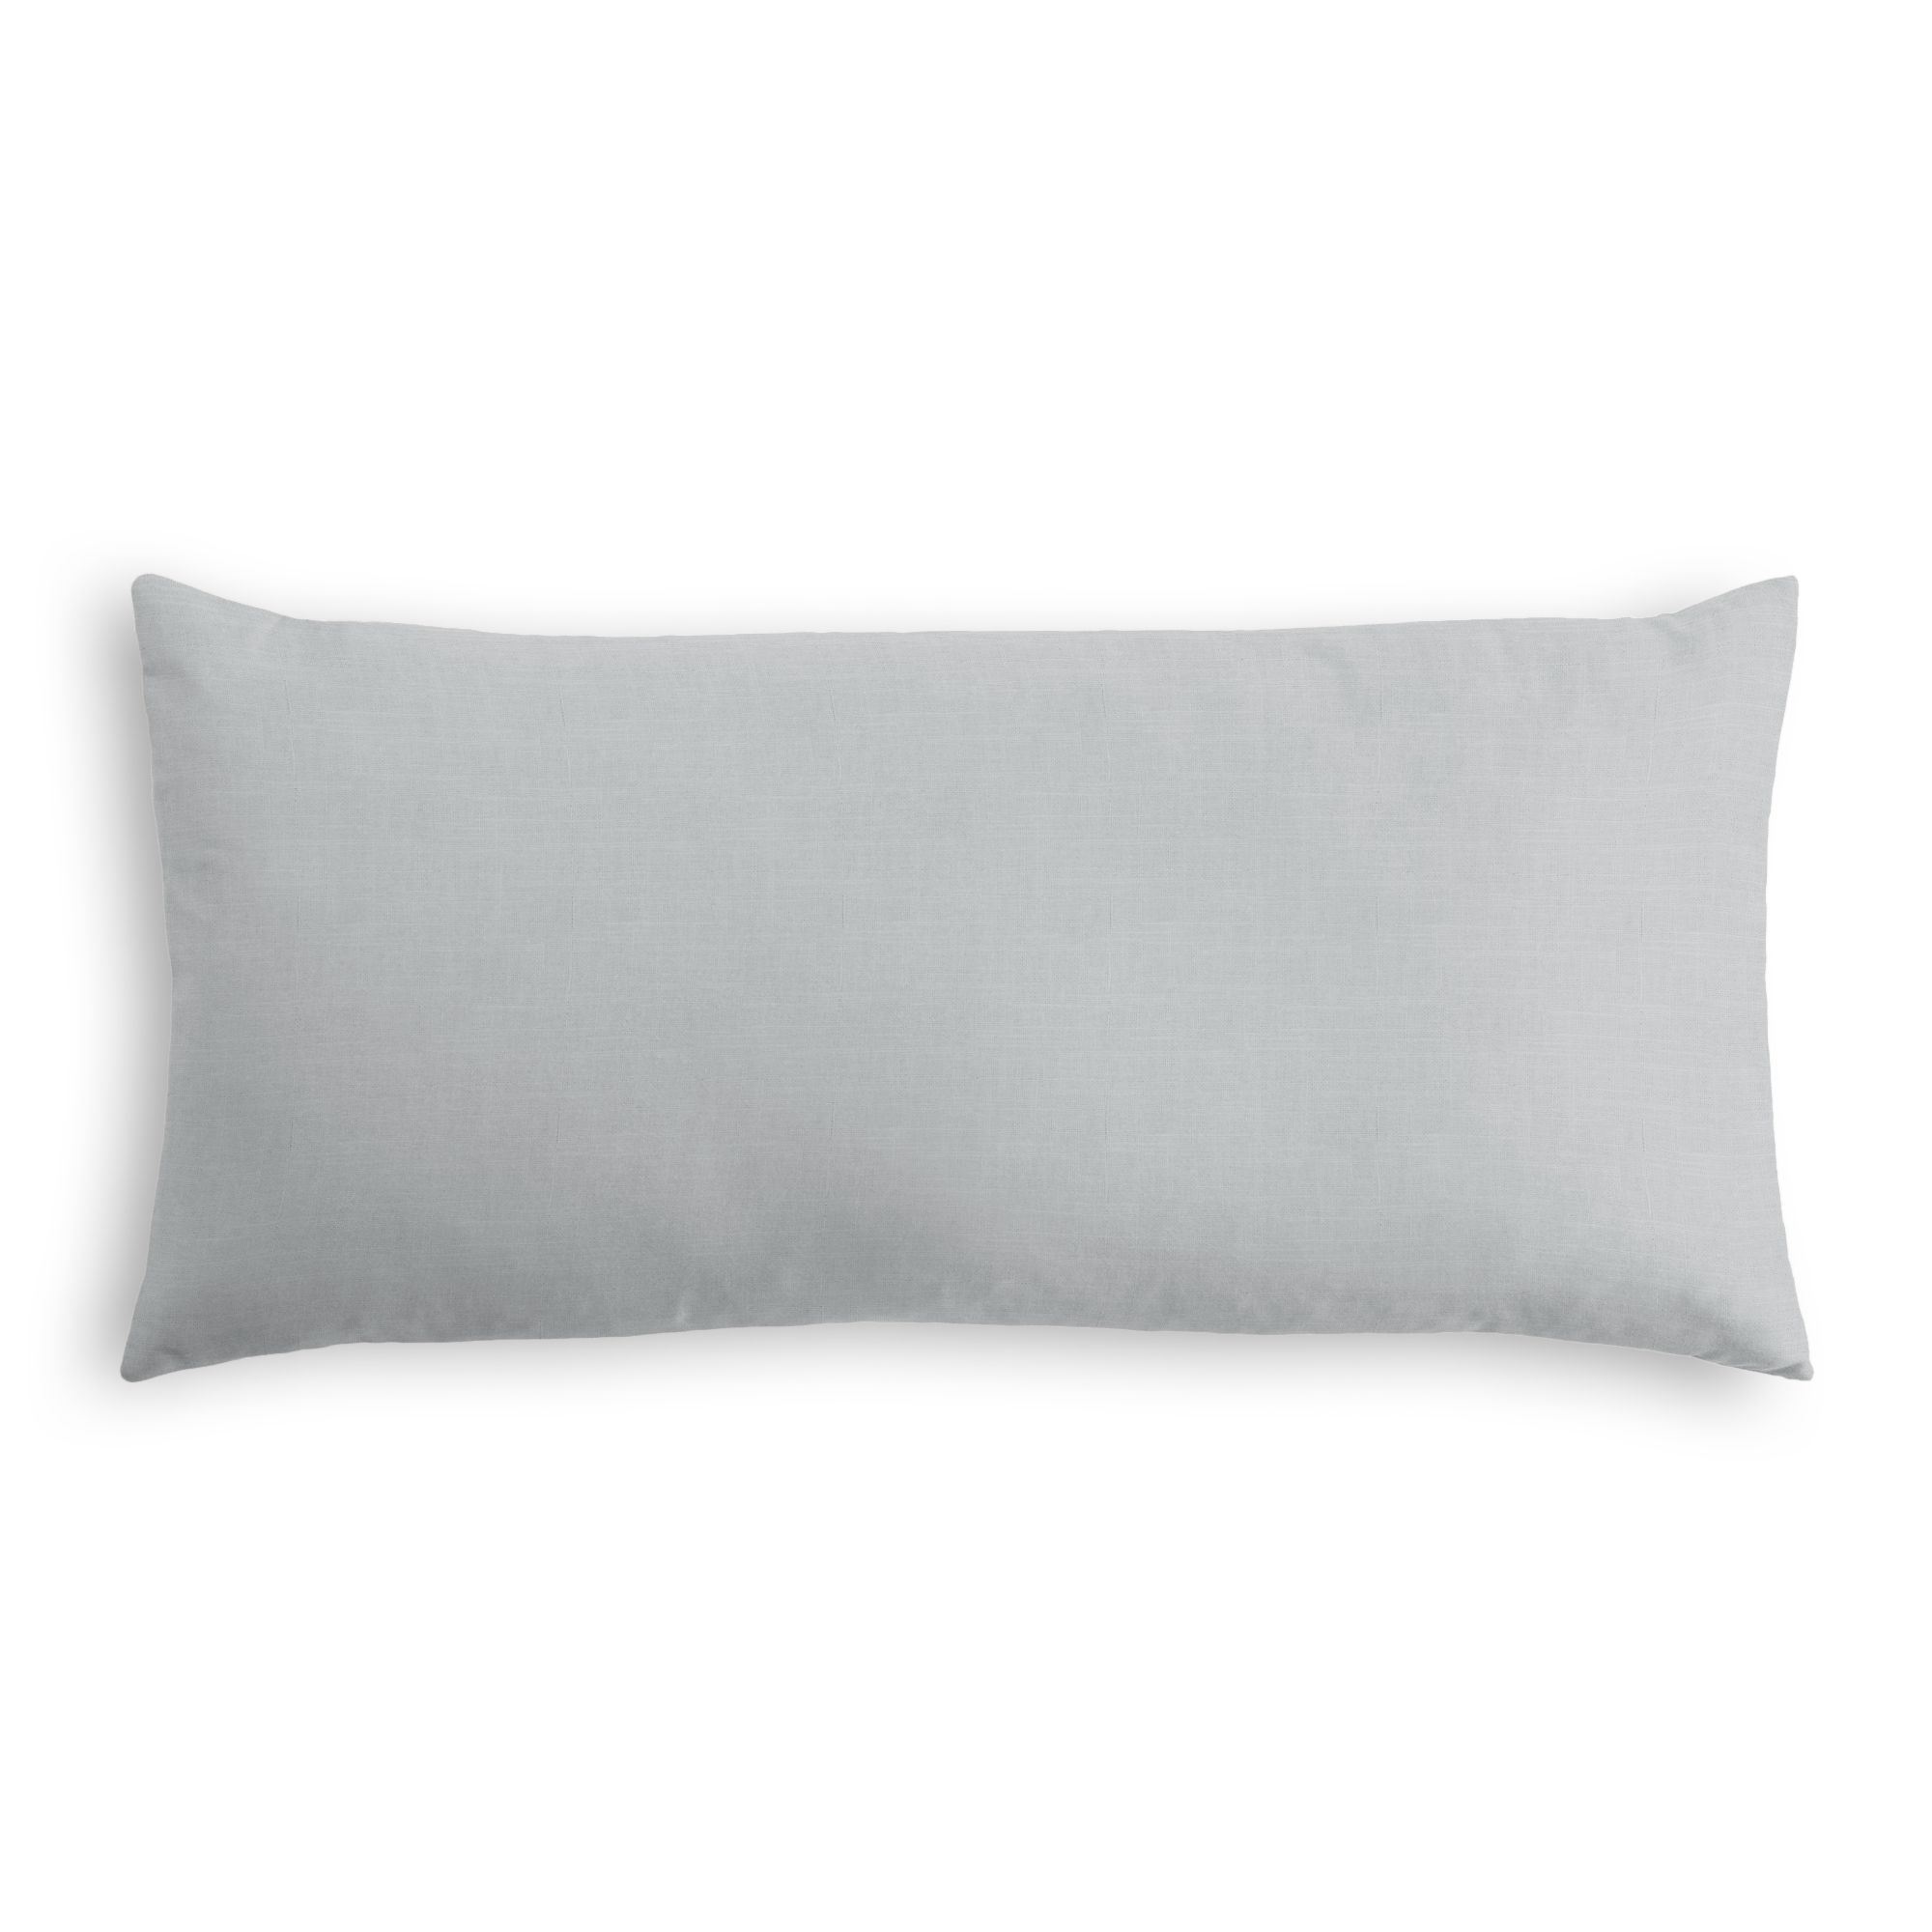 Classic Linen Lumbar Pillow, Classic Gray, 18" x 12" - Image 0